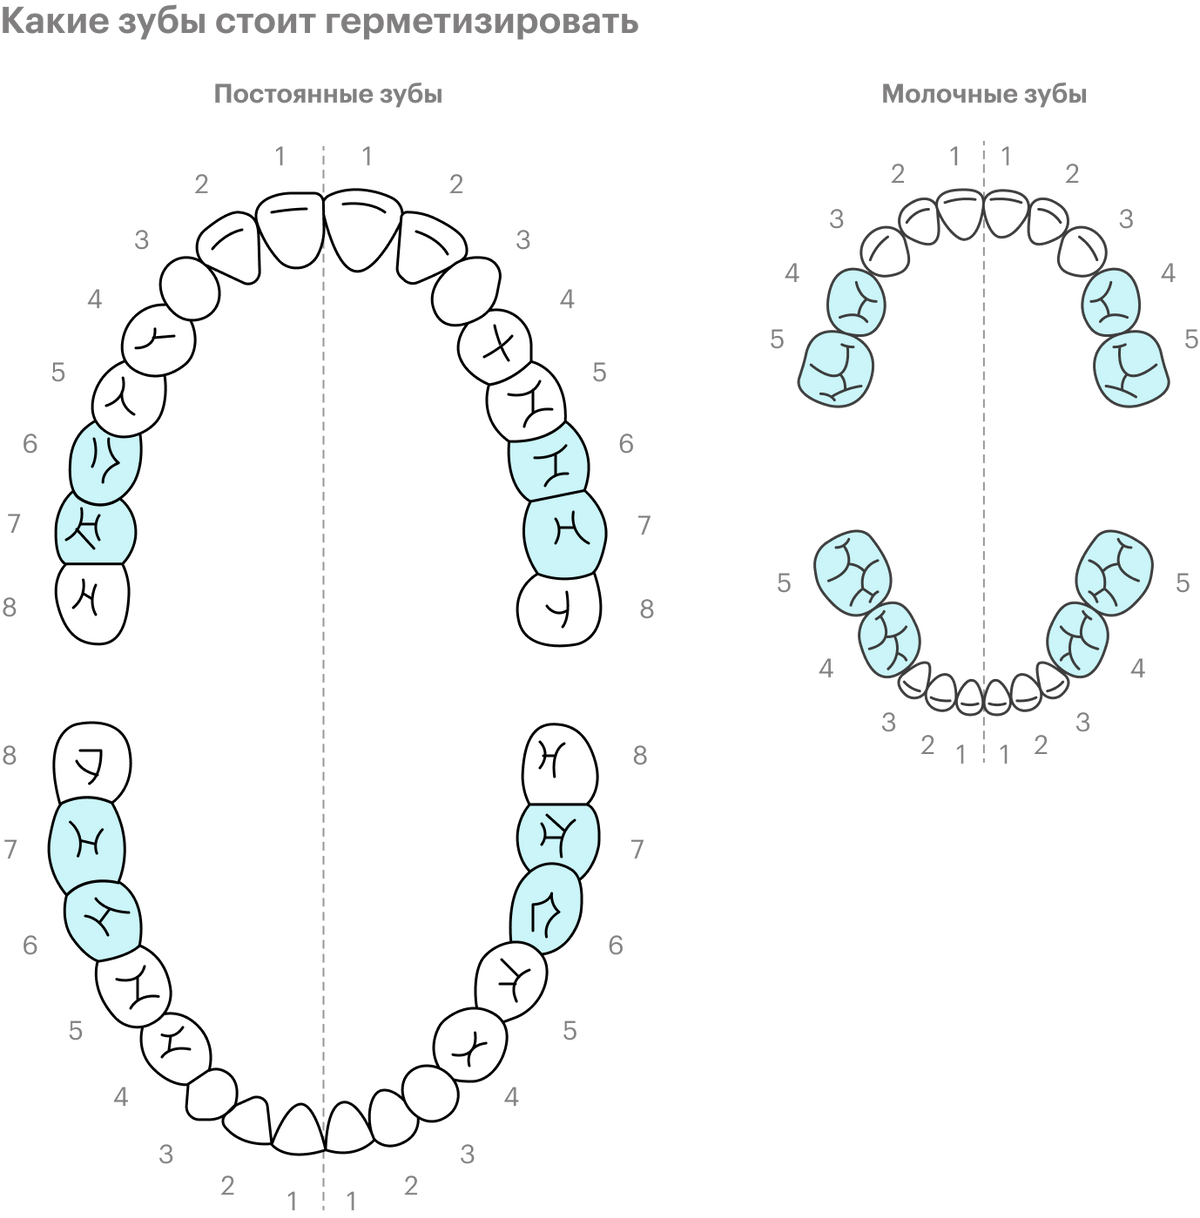 Герметизация обычно нужна постоянным «шестеркам» и «семеркам». Иногда герметизируют и молочные зубы — 5 и 4